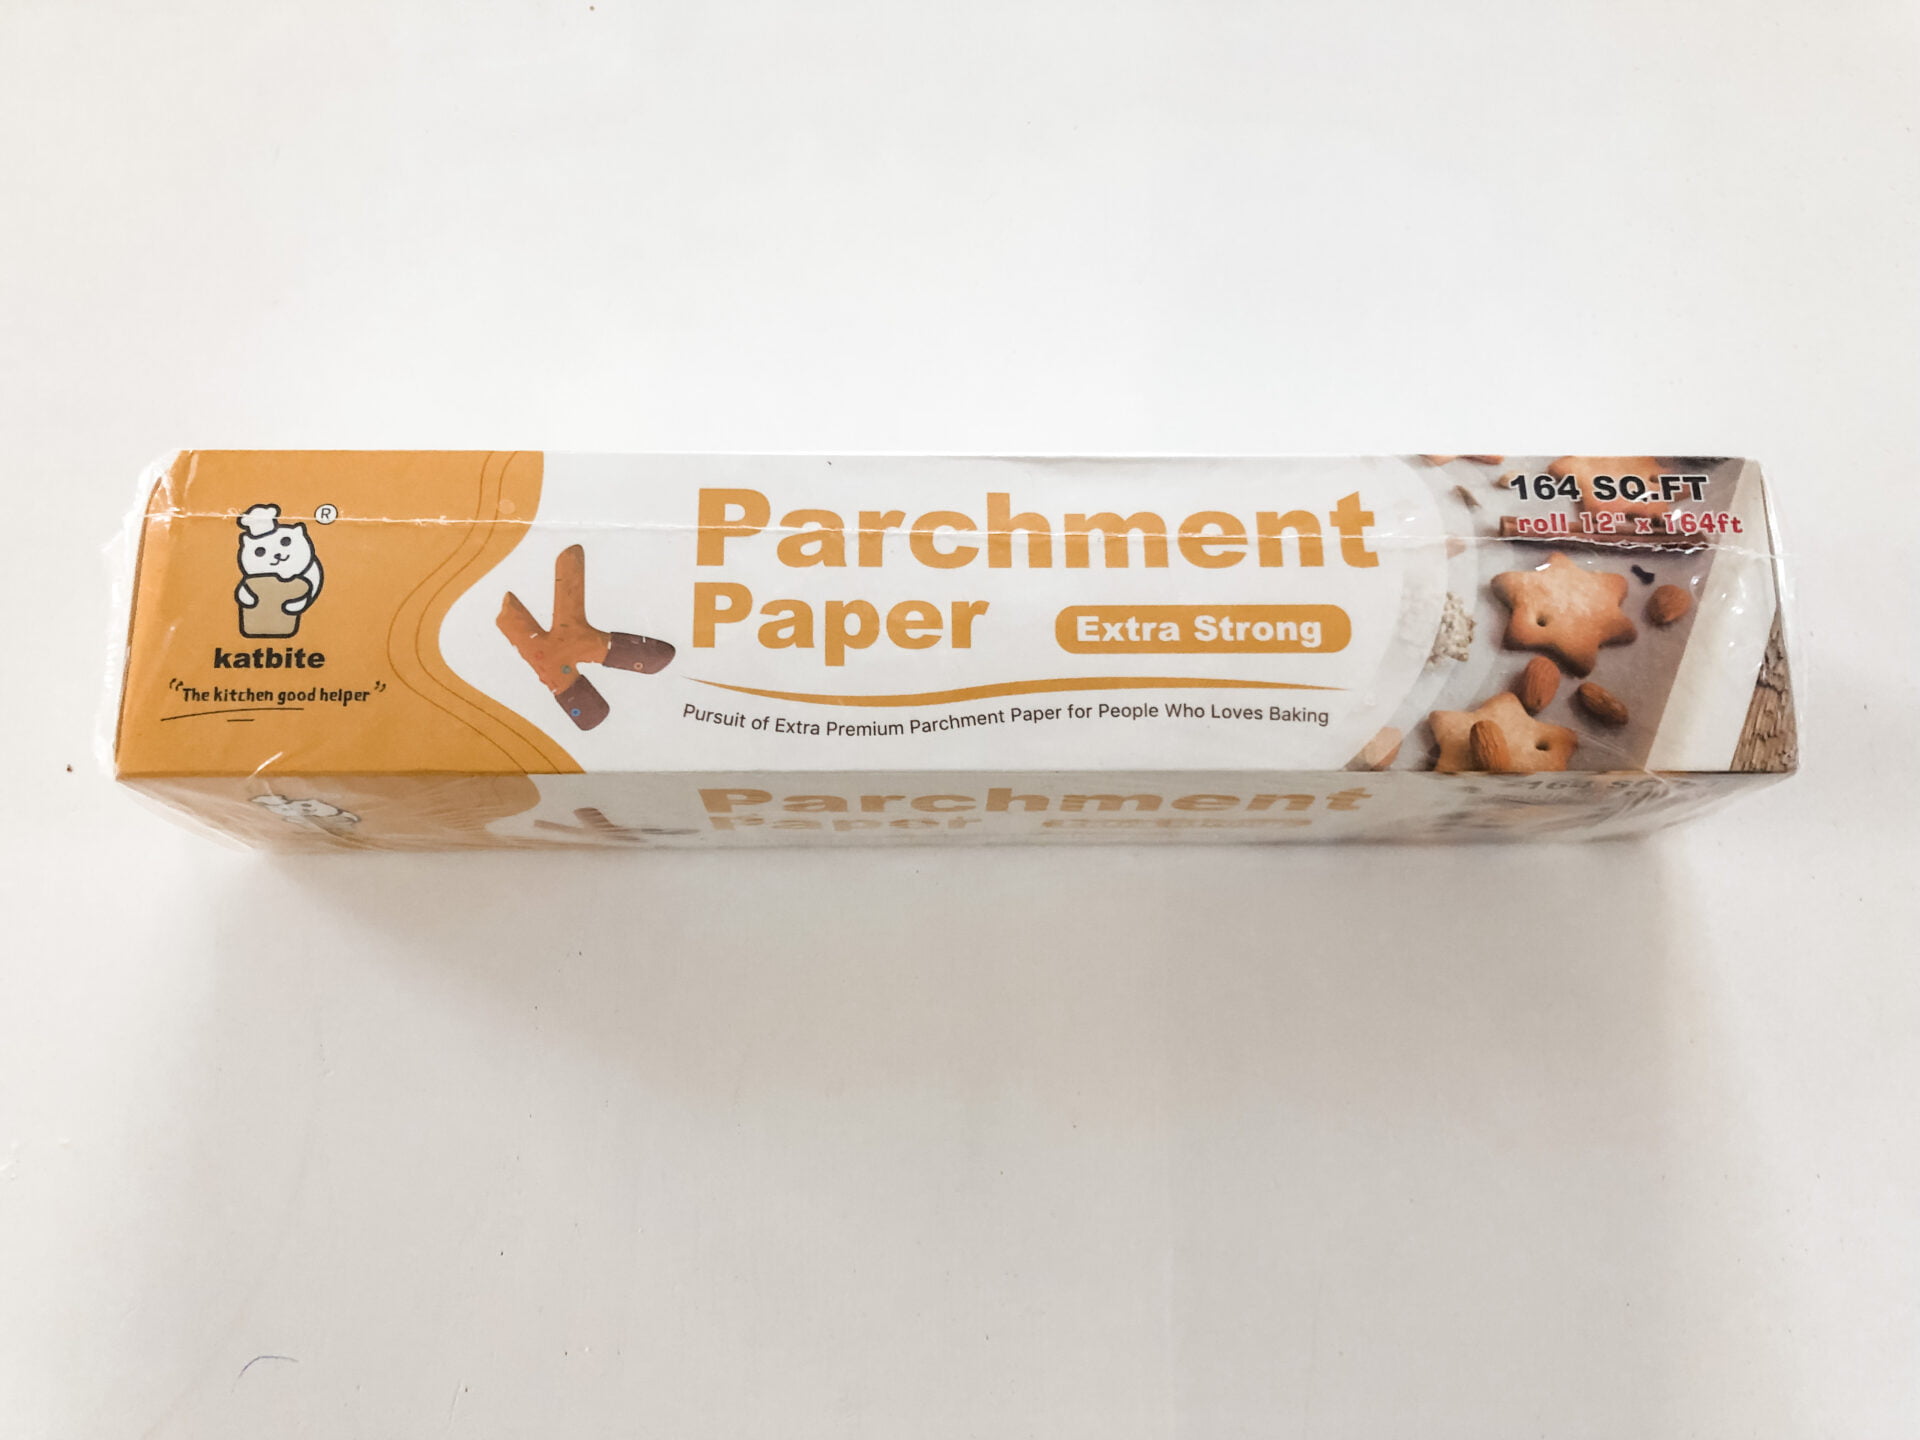 Safest Non-Toxic Parchment Paper Without PFAS Forever Chemicals